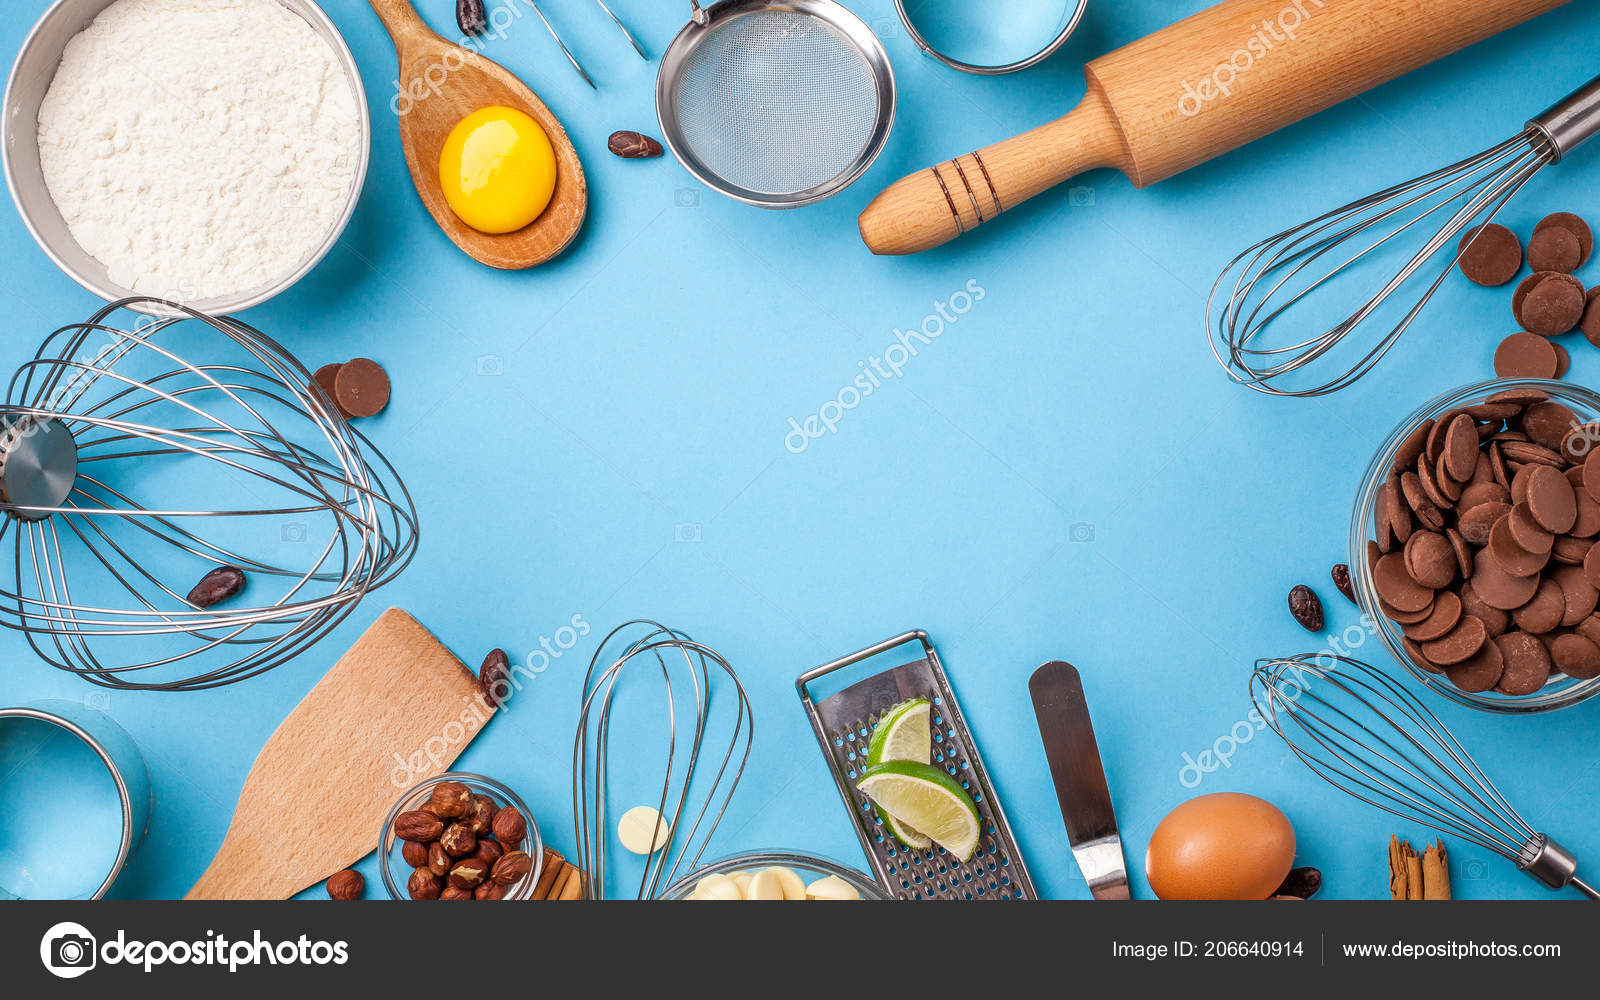 Bộ phận nền bếp màu xanh thanh lịch mang lại sự khác biệt cho ngôi nhà của bạn. Xem hình ảnh để đón nhận những cảm giác tinh tế lấp lánh với bộ phận nền bếp này.